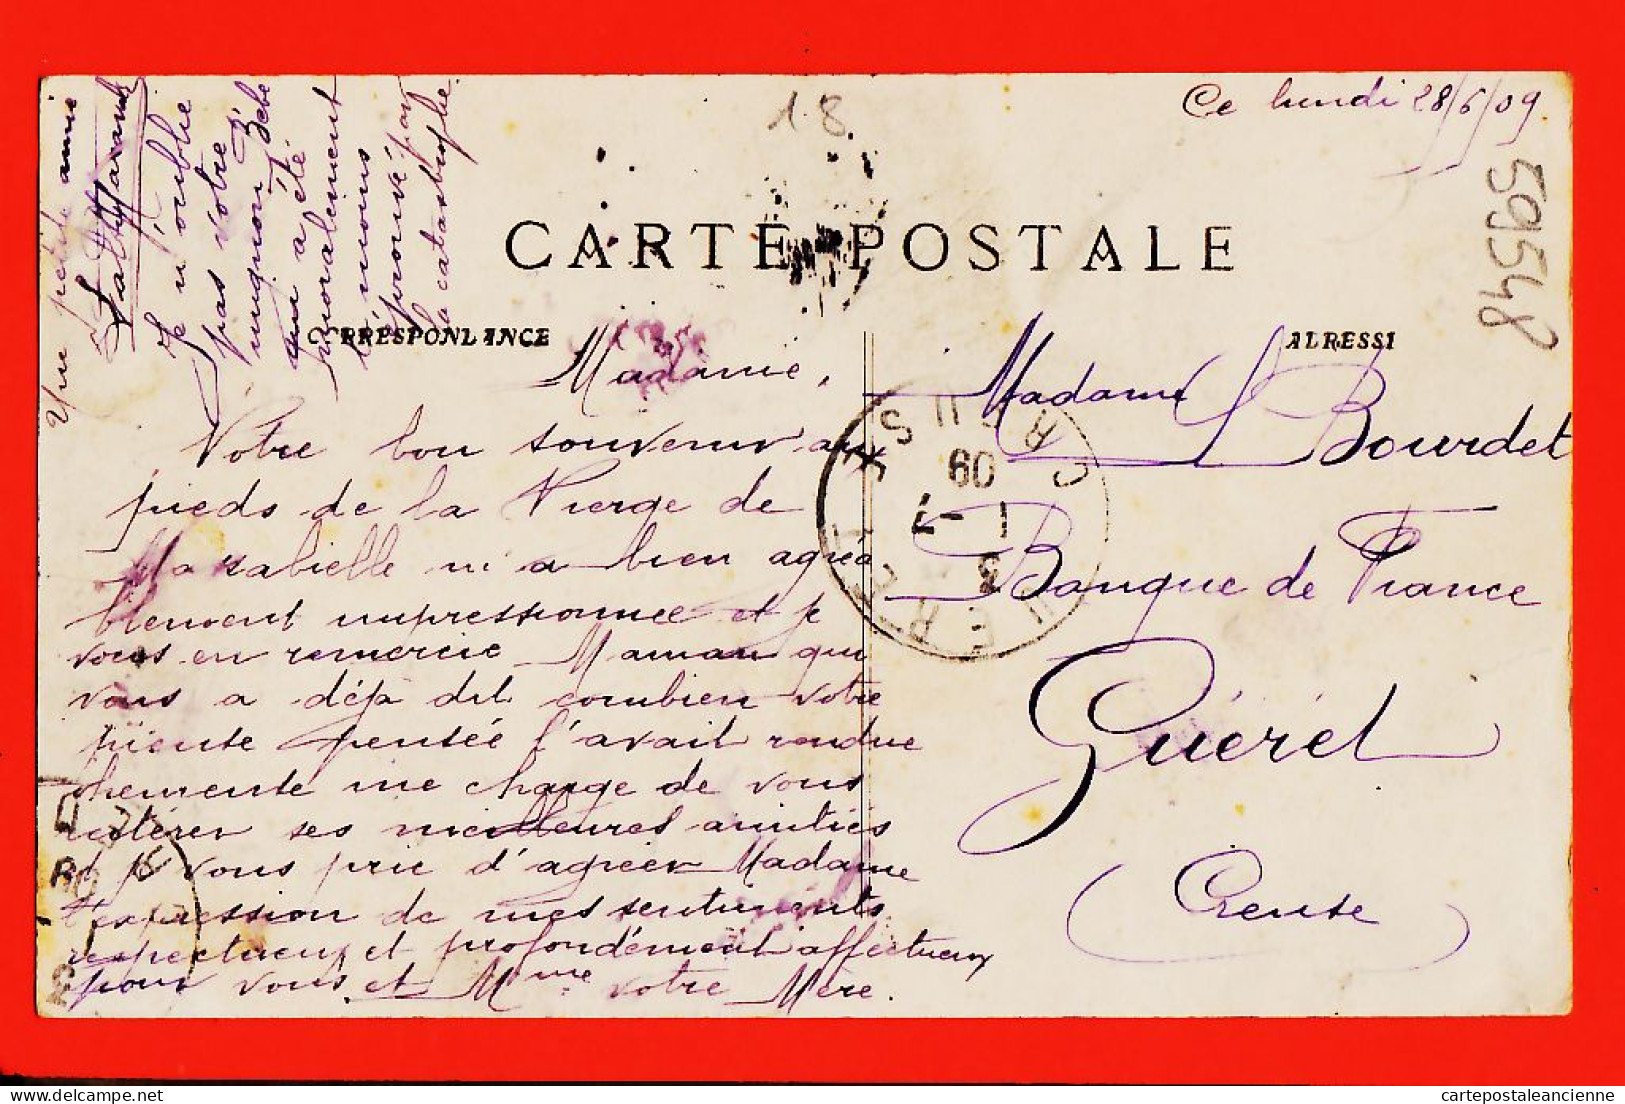 10800 ● ● SALON Tremblement Terre 11 Juin 1909 Ecroulement Partie Chateau à BOURDET Banque France Gueret Collection L.A - Salon De Provence